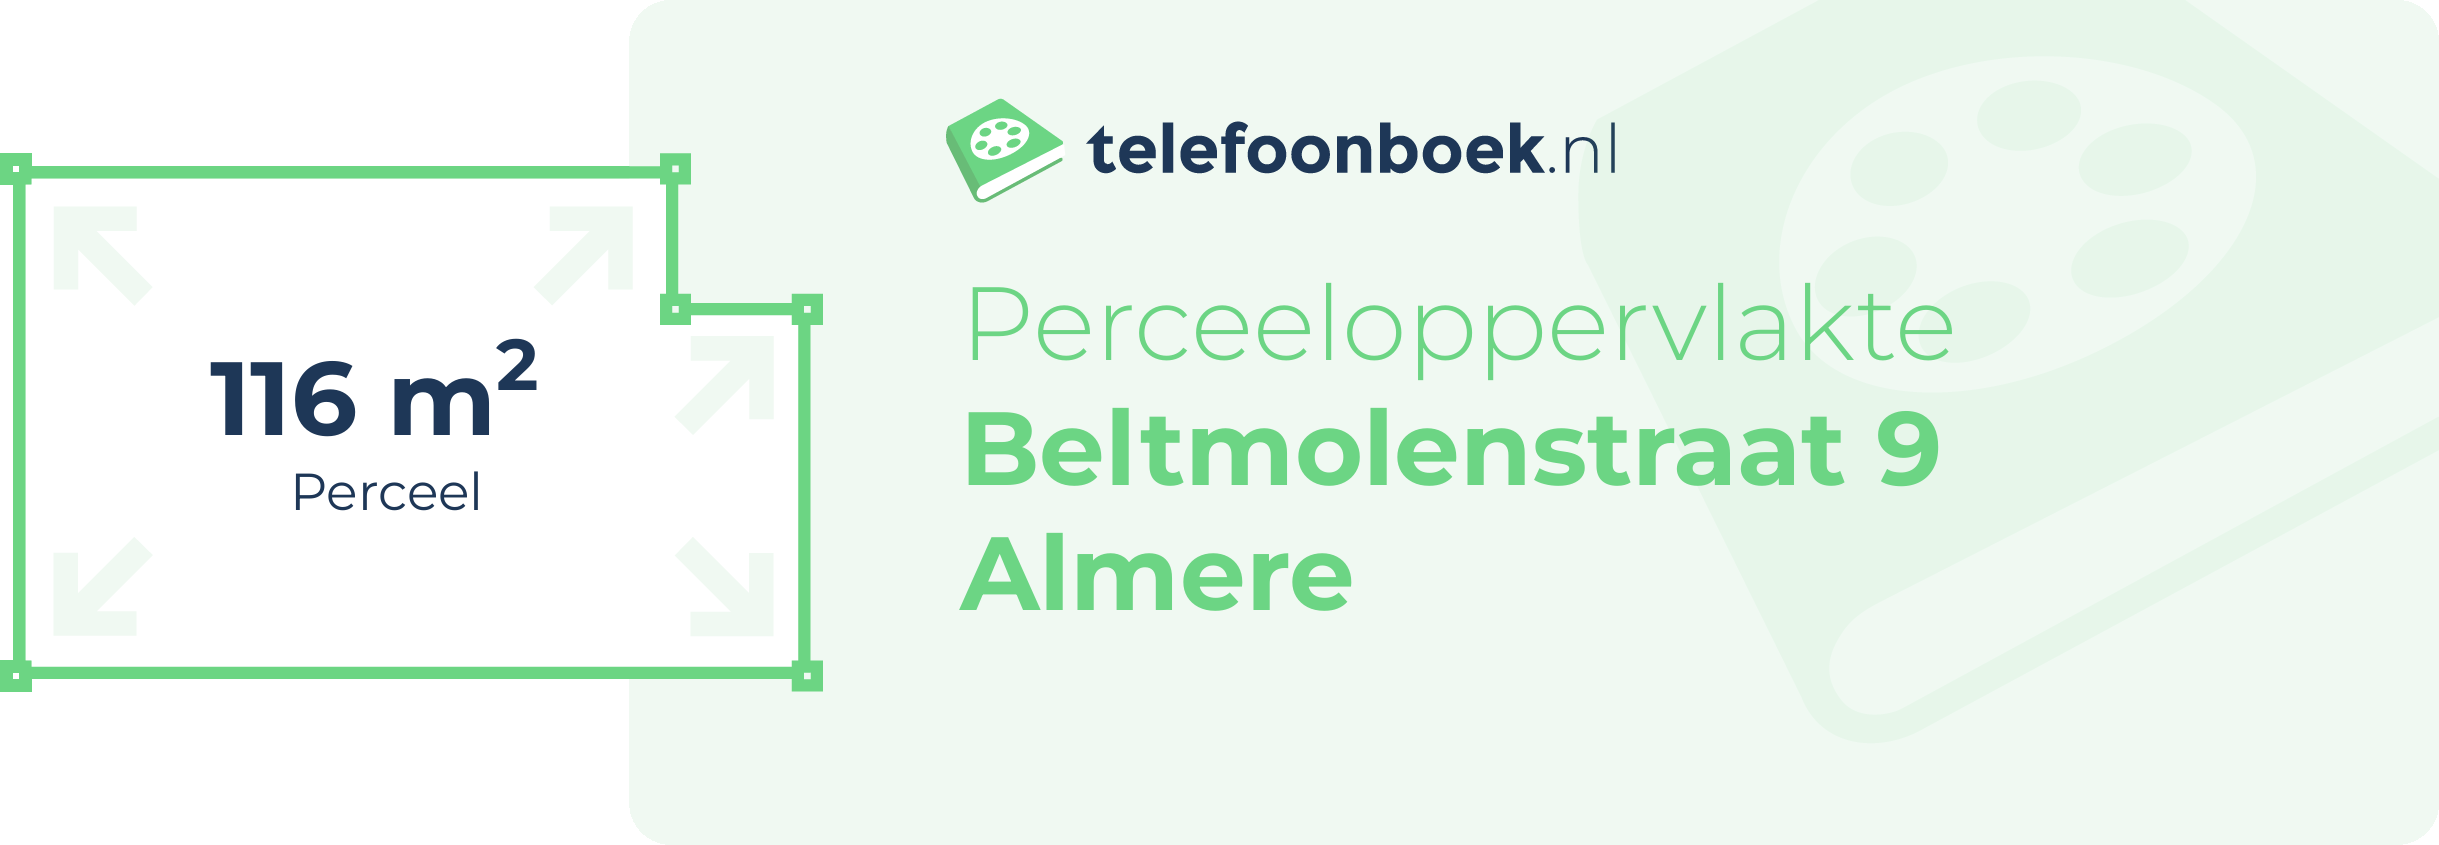 Perceeloppervlakte Beltmolenstraat 9 Almere